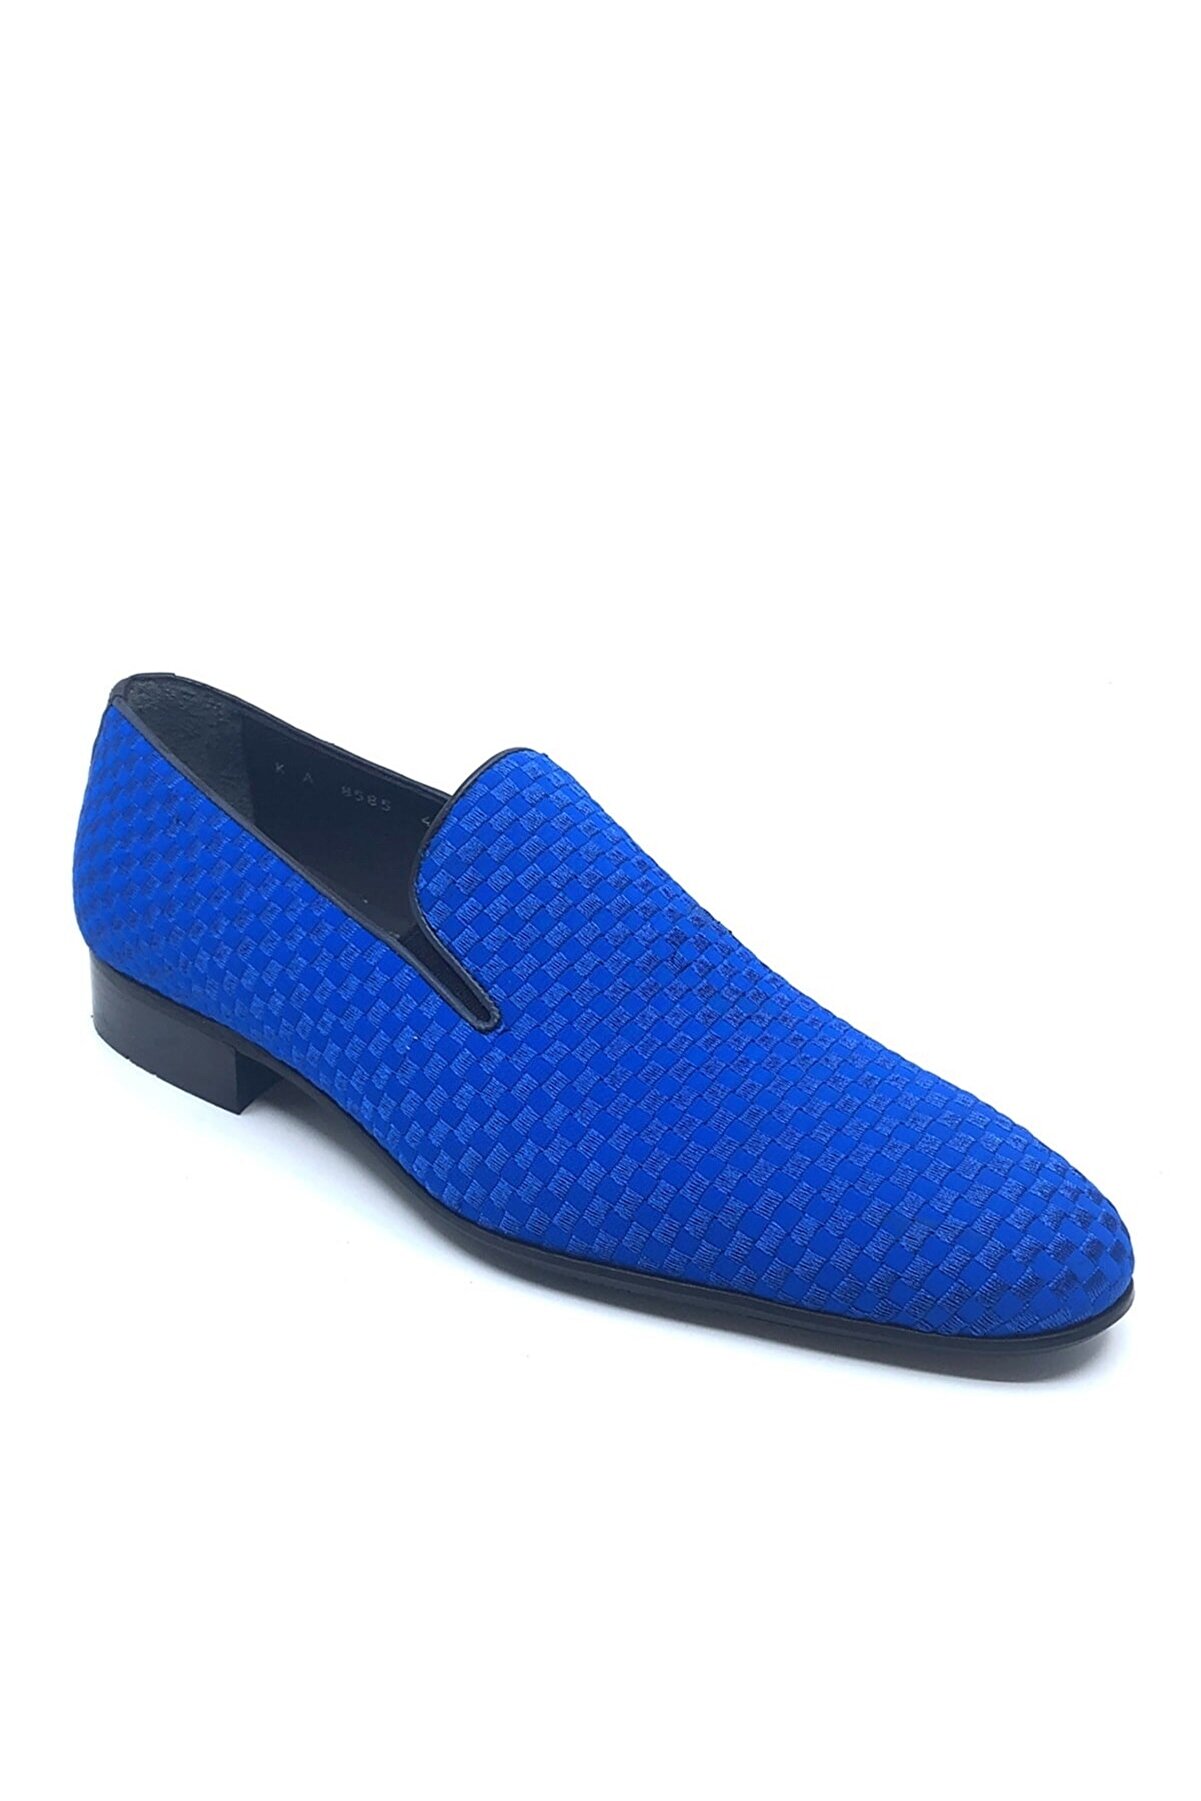 Fosco Nakışlı Mavi Klasik Erkek Ayakkabı 1305